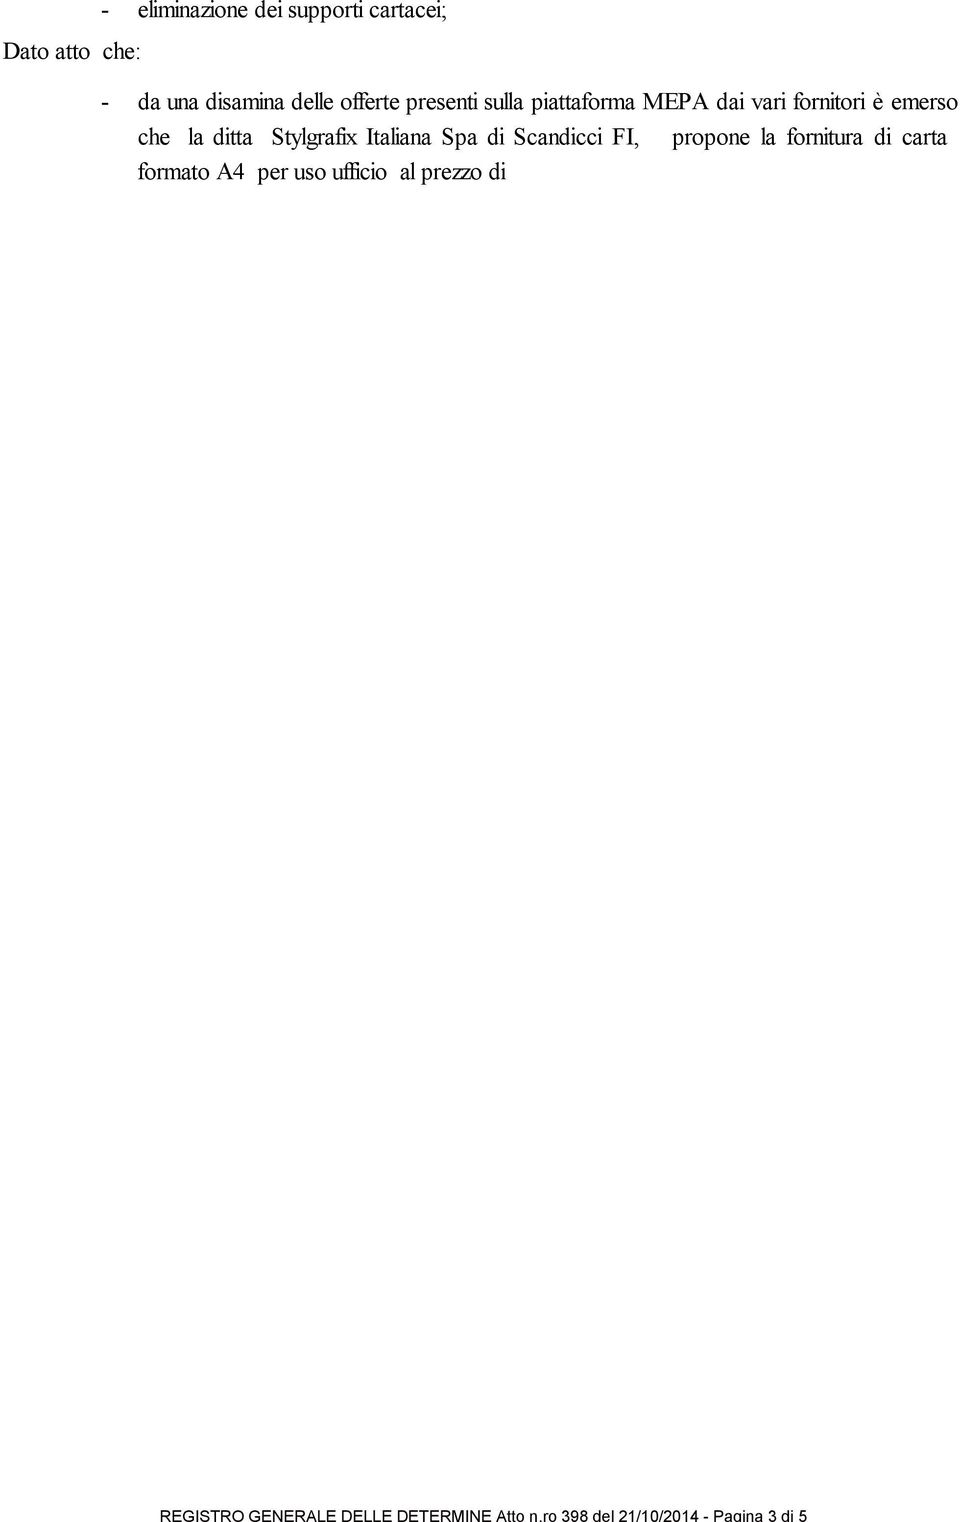 Stylgrafix Italiana Spa di Scandicci FI, propone la fornitura di carta formato A4 per uso ufficio al prezzo di 2,29 la risma Iva esclusa, - l' offerta della Stylgrafix Italiana Spa di Scandicci FI,